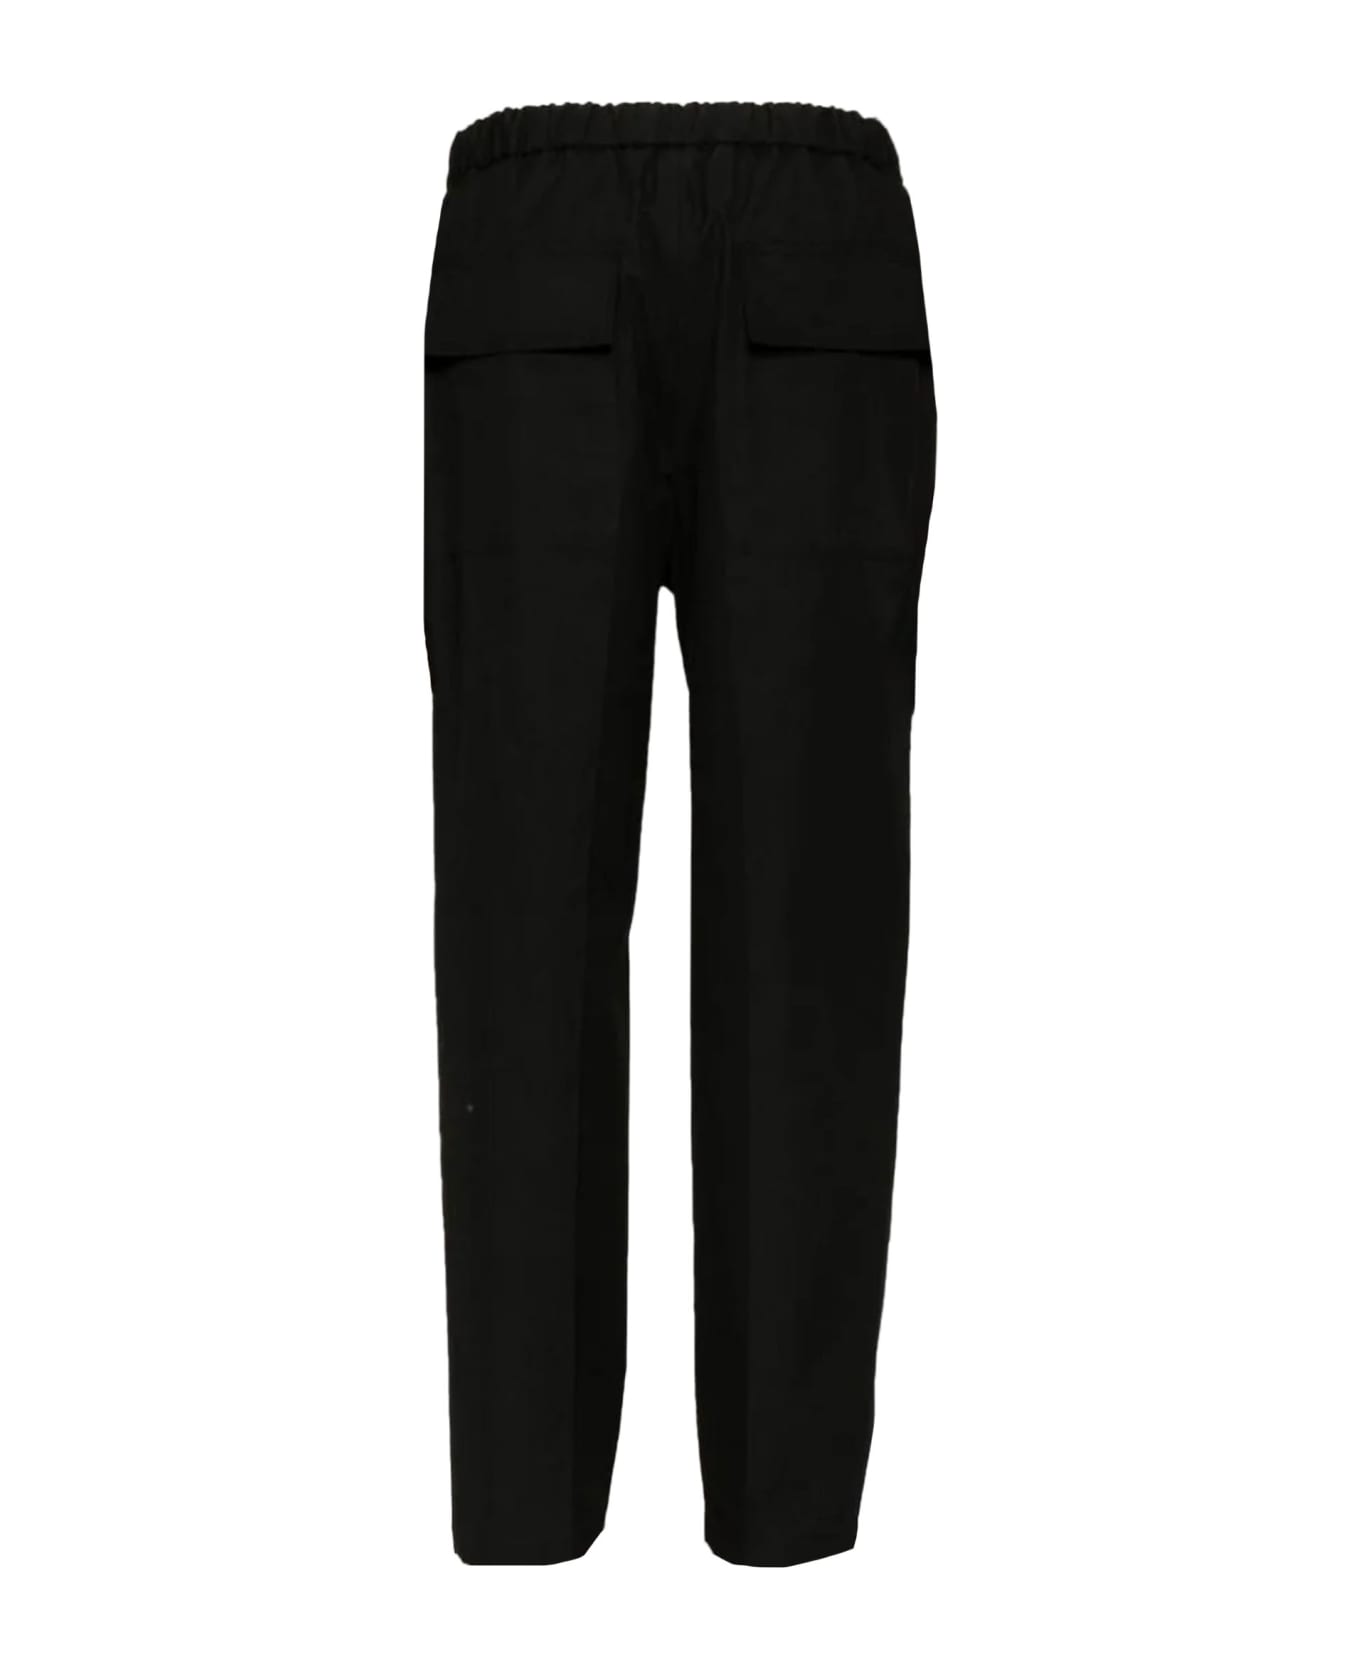 Jil Sander Black Cotton Trousers - Black